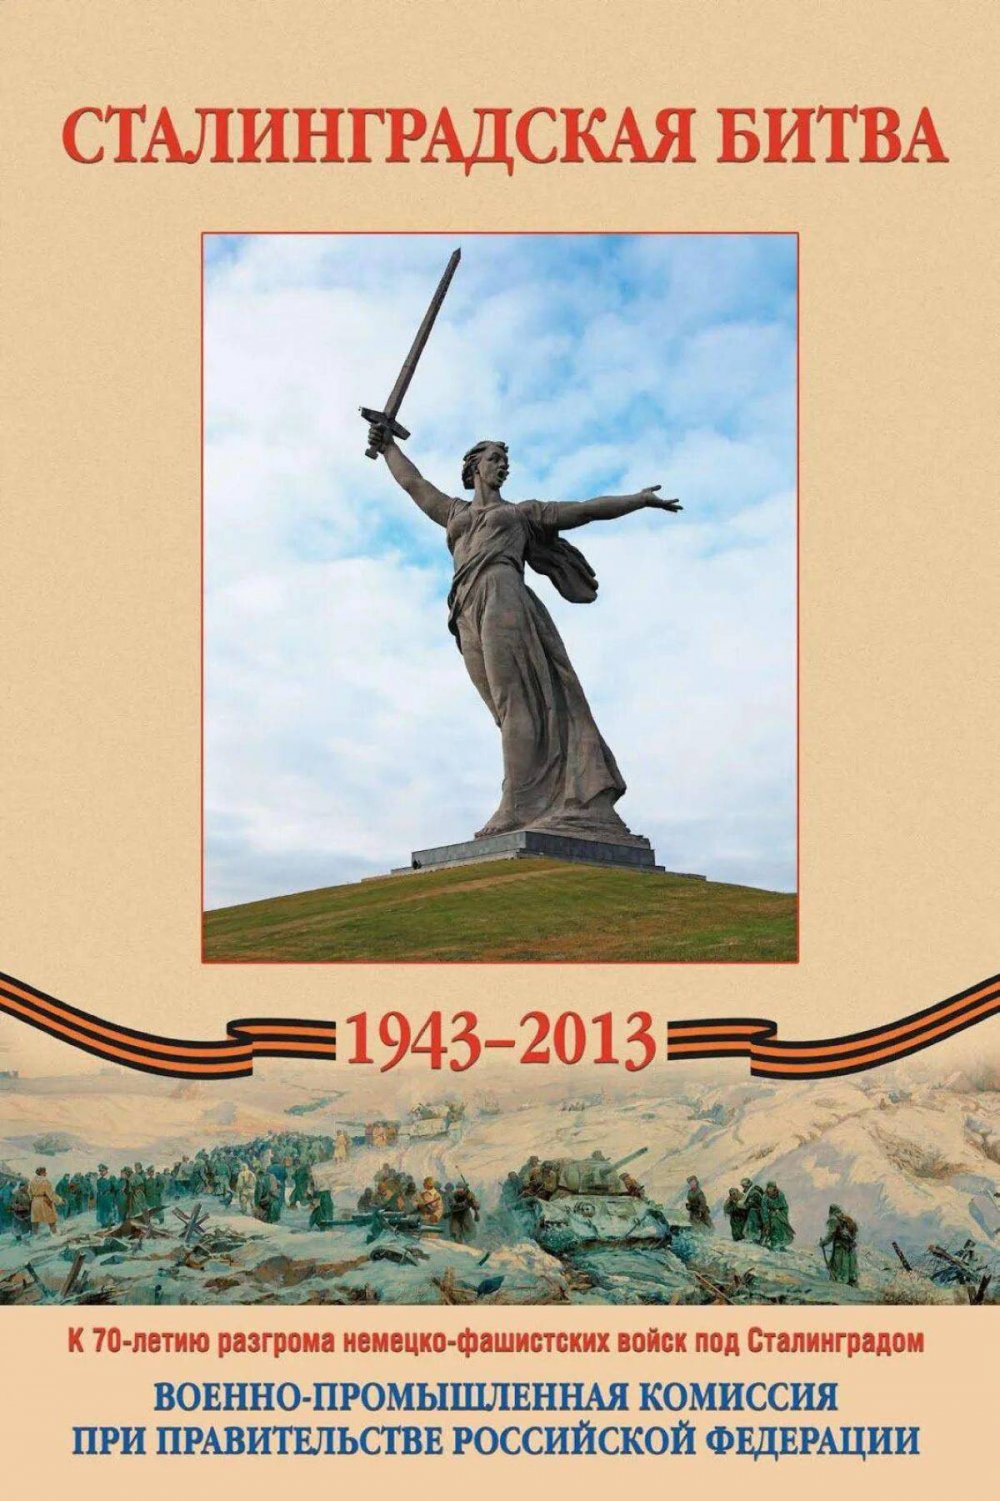 Сталинградская битва 200 дней Мужества